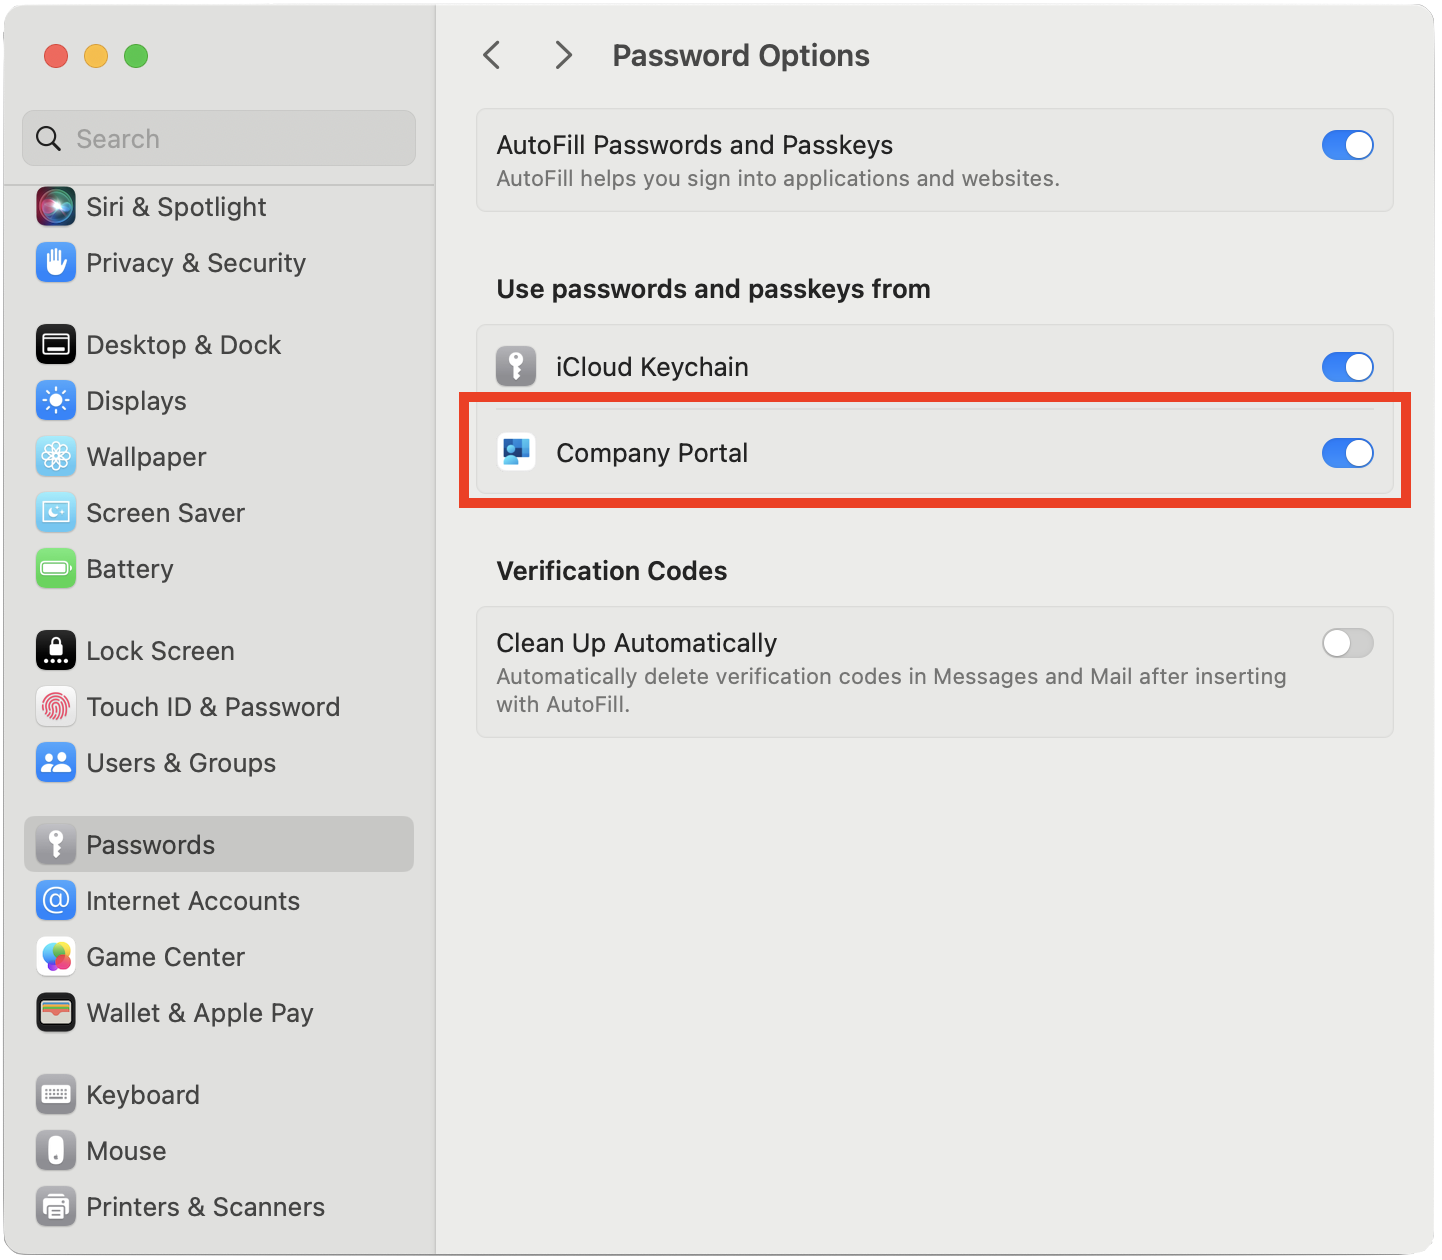 Снимок экрана: окно параметров пароля, указывающее, что использование паролей и ключей доступа из Корпоративный портал было включено параметром.